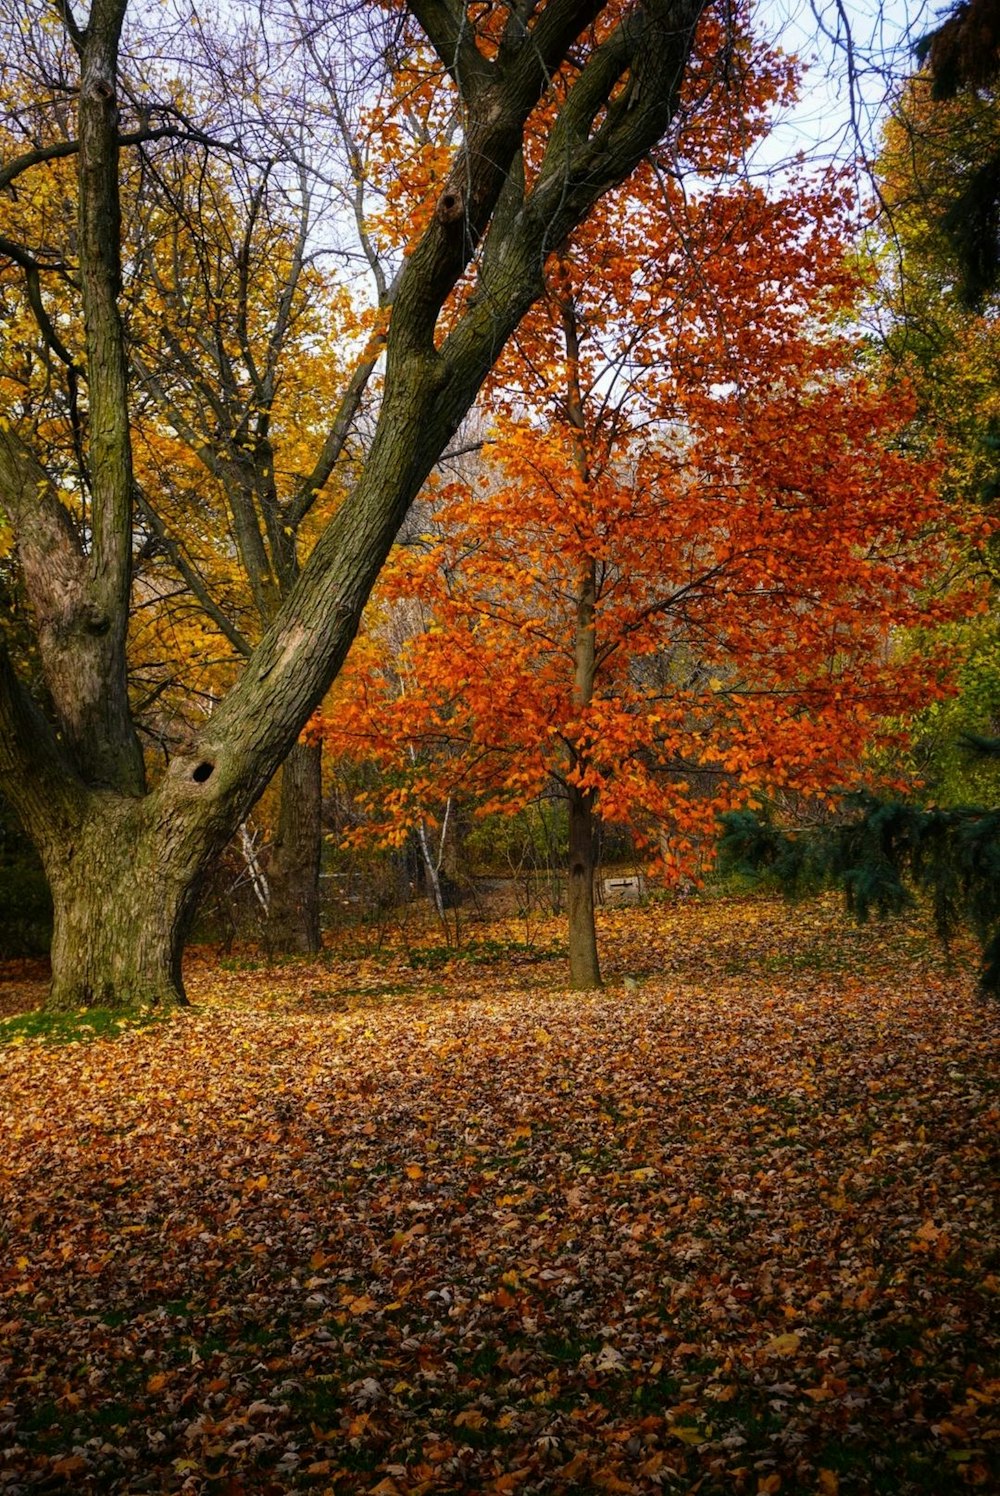 Un árbol en un parque con muchas hojas en el suelo